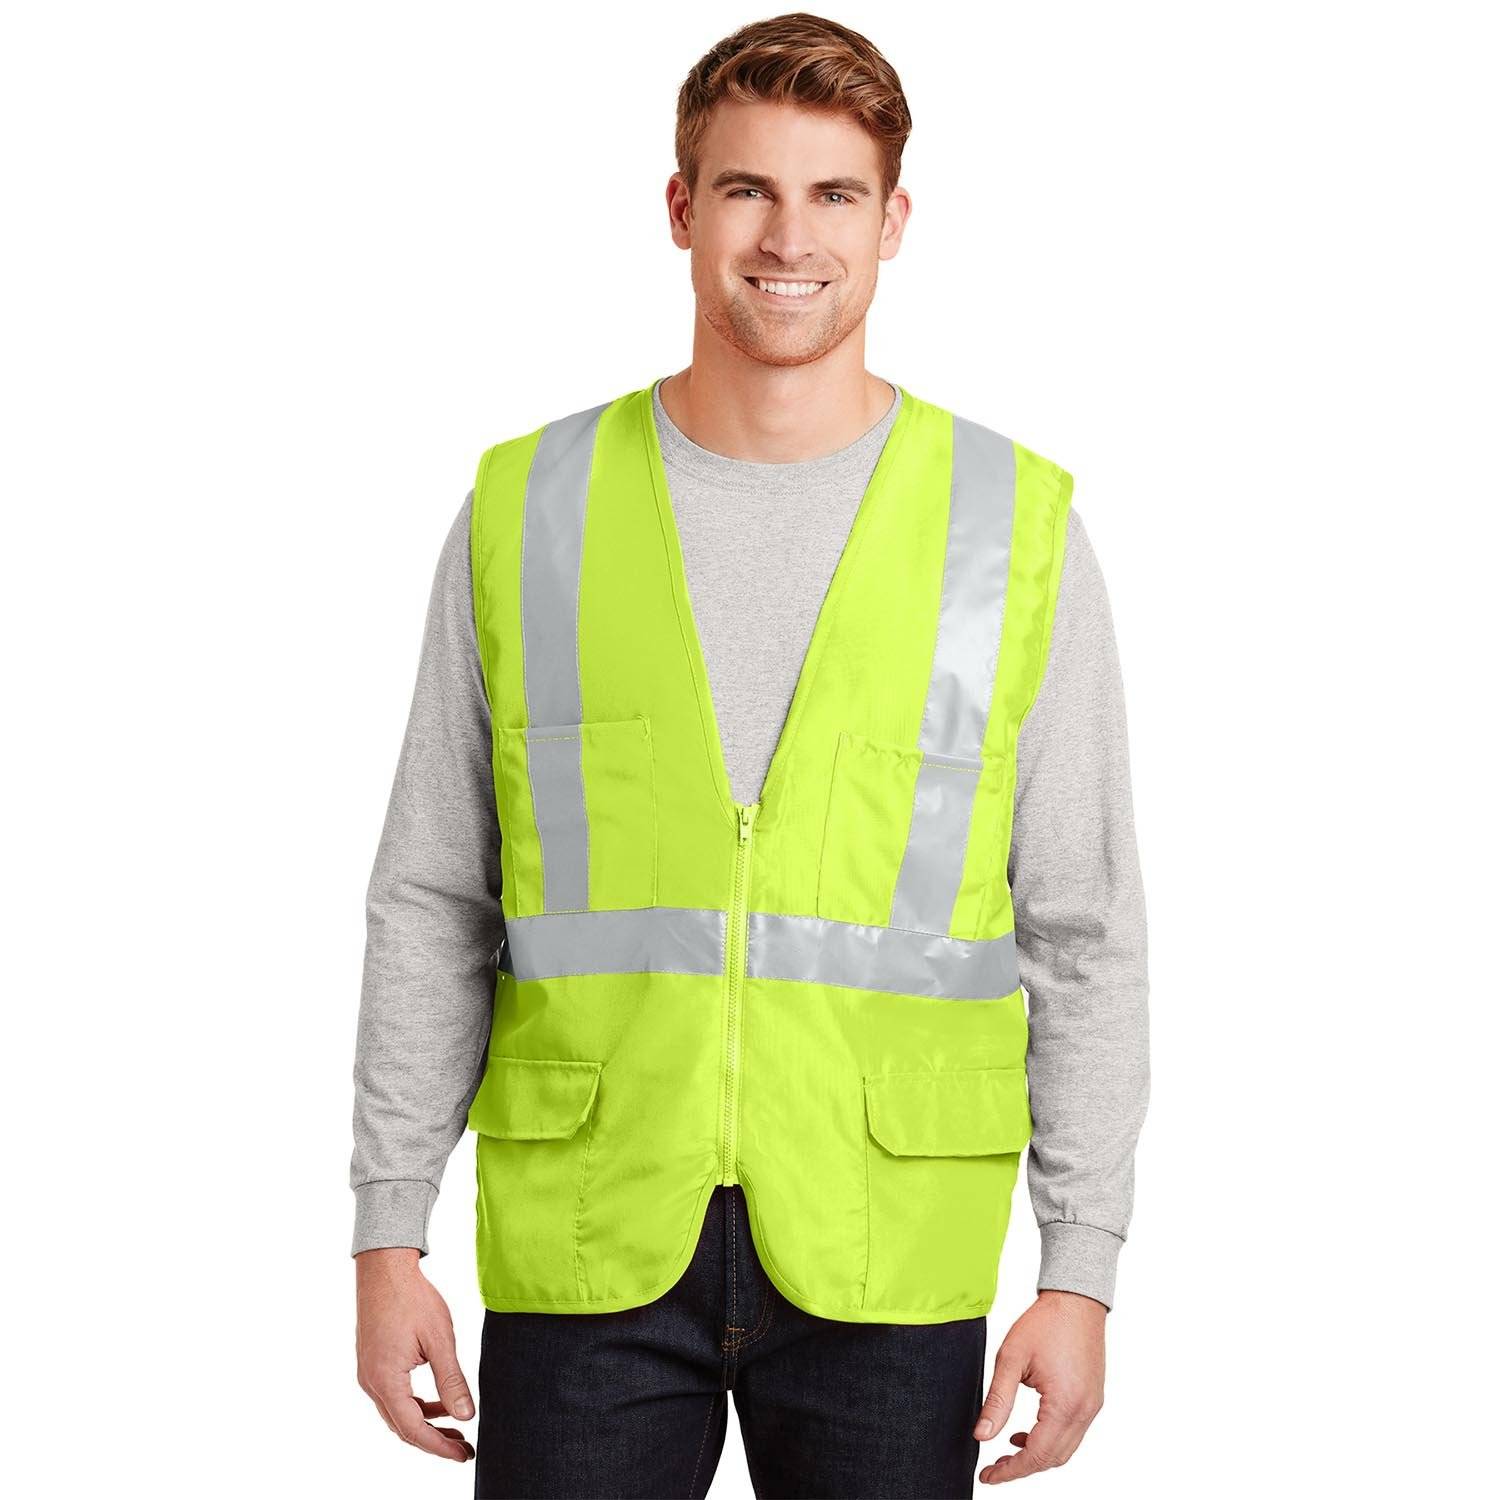 CornerStone ANSI Class 2 Safety Vest